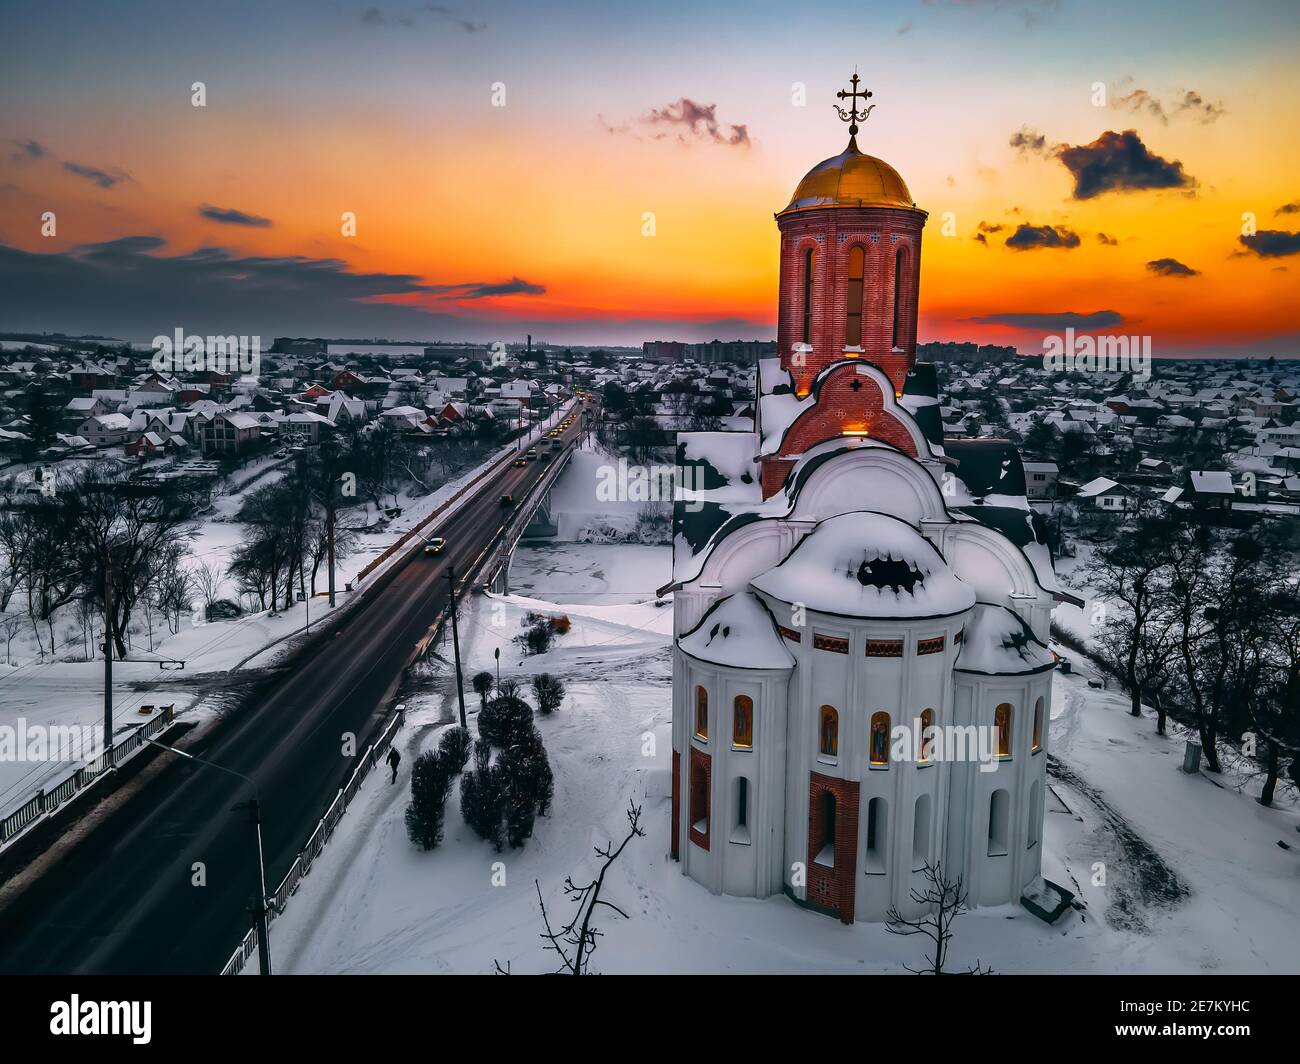 Vista aerea della chiesa in una piccola città europea coperta di neve al luminoso tramonto d'inverno, splendidi tramonti e nuvole. Drone. Inverno. Ucraina, 2021 Foto Stock